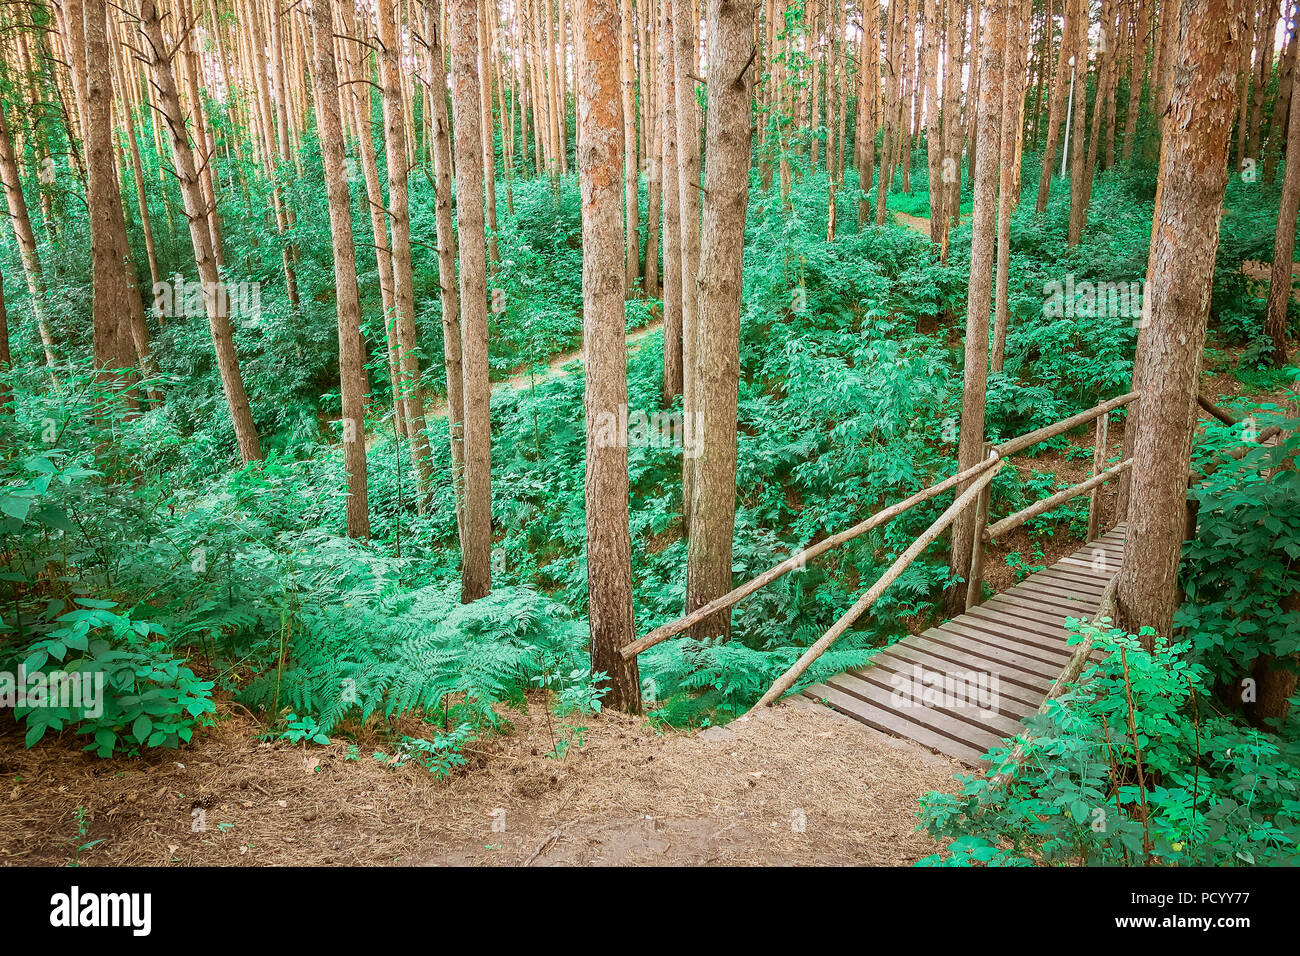 Le chemin en bois menant à travers une forêt verte. Tourisme vue sur sentier en bois entre les arbres et l'herbe. La nature russe. Banque D'Images